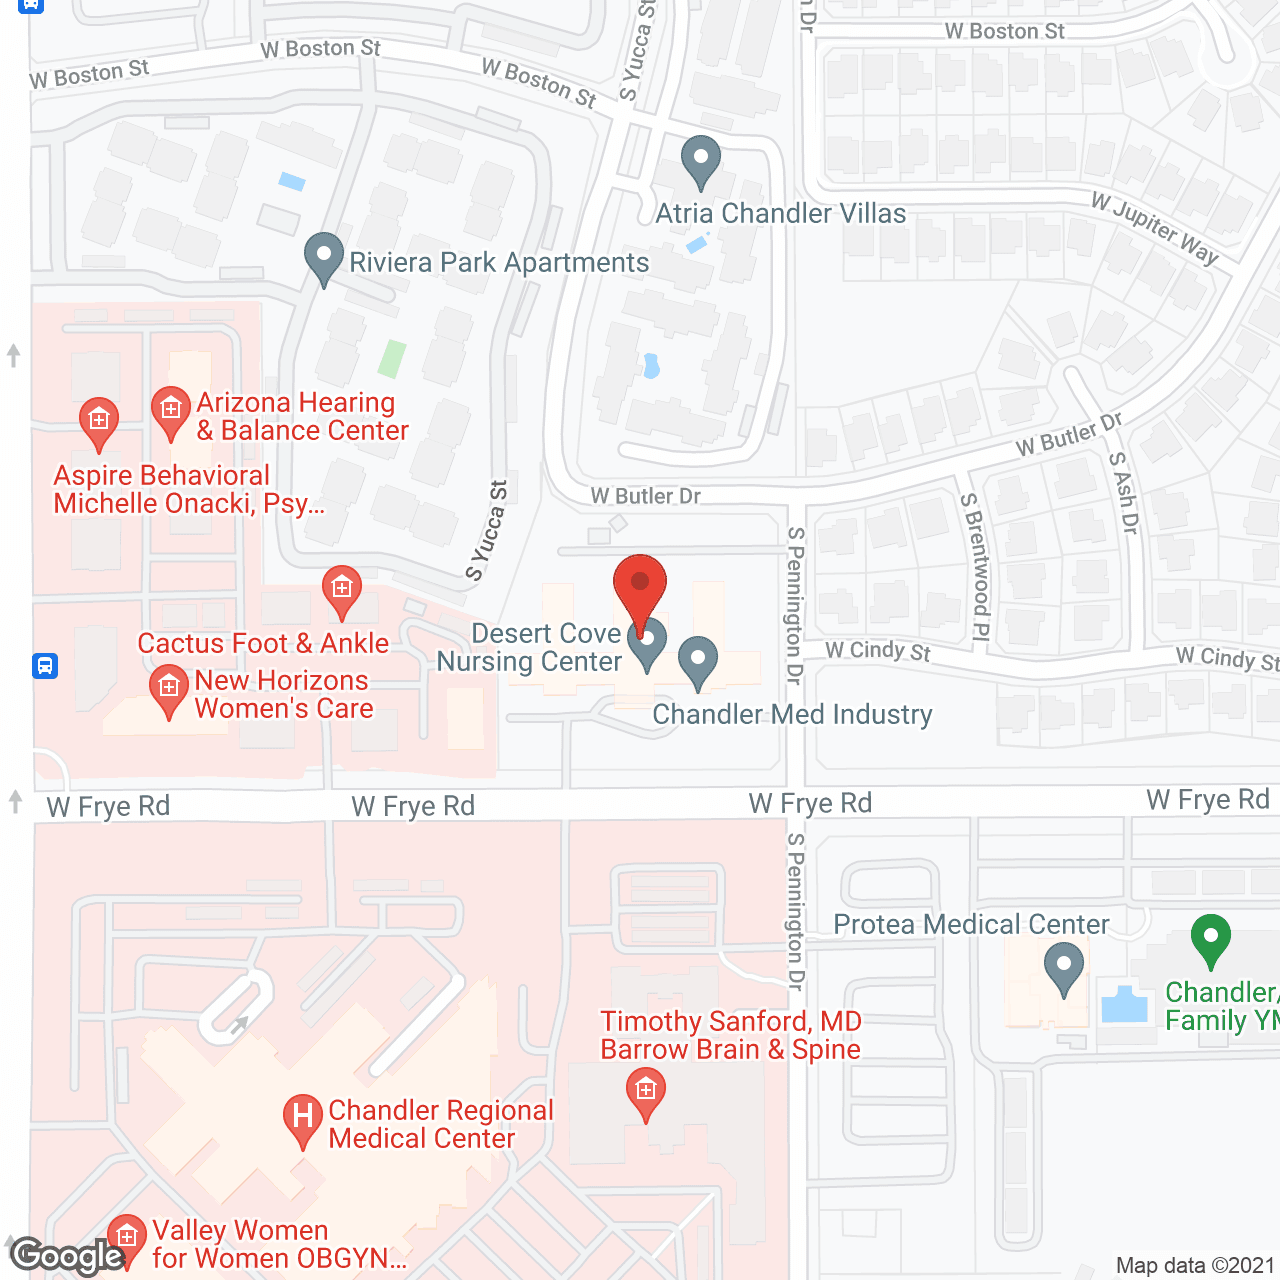 Desert Cove Nursing Center in google map